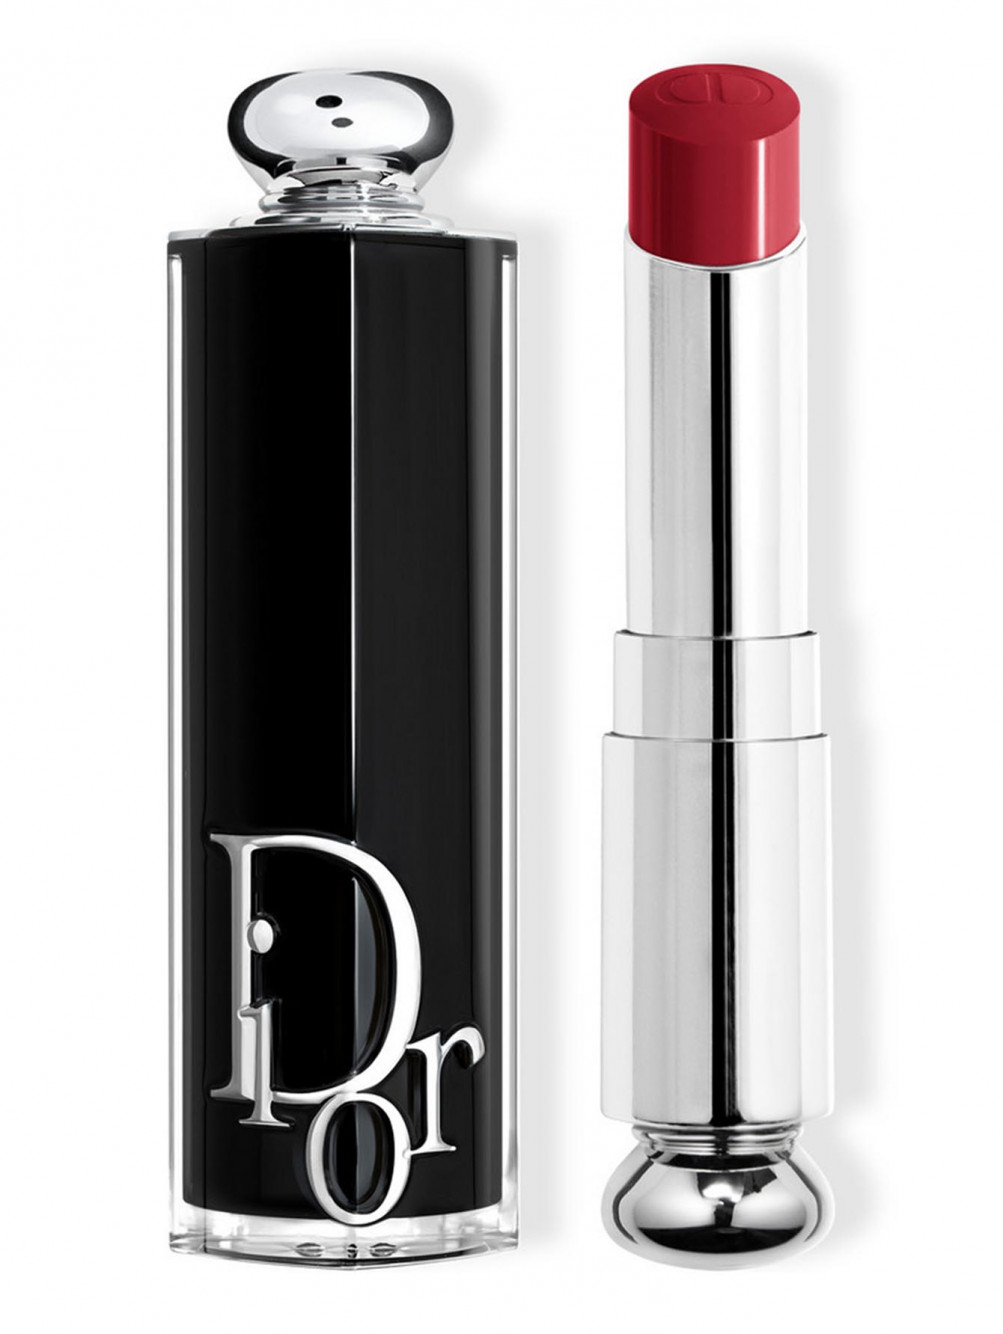 Помада для губ Dior Addict, Красное сердце 872, 3,2 г - Общий вид